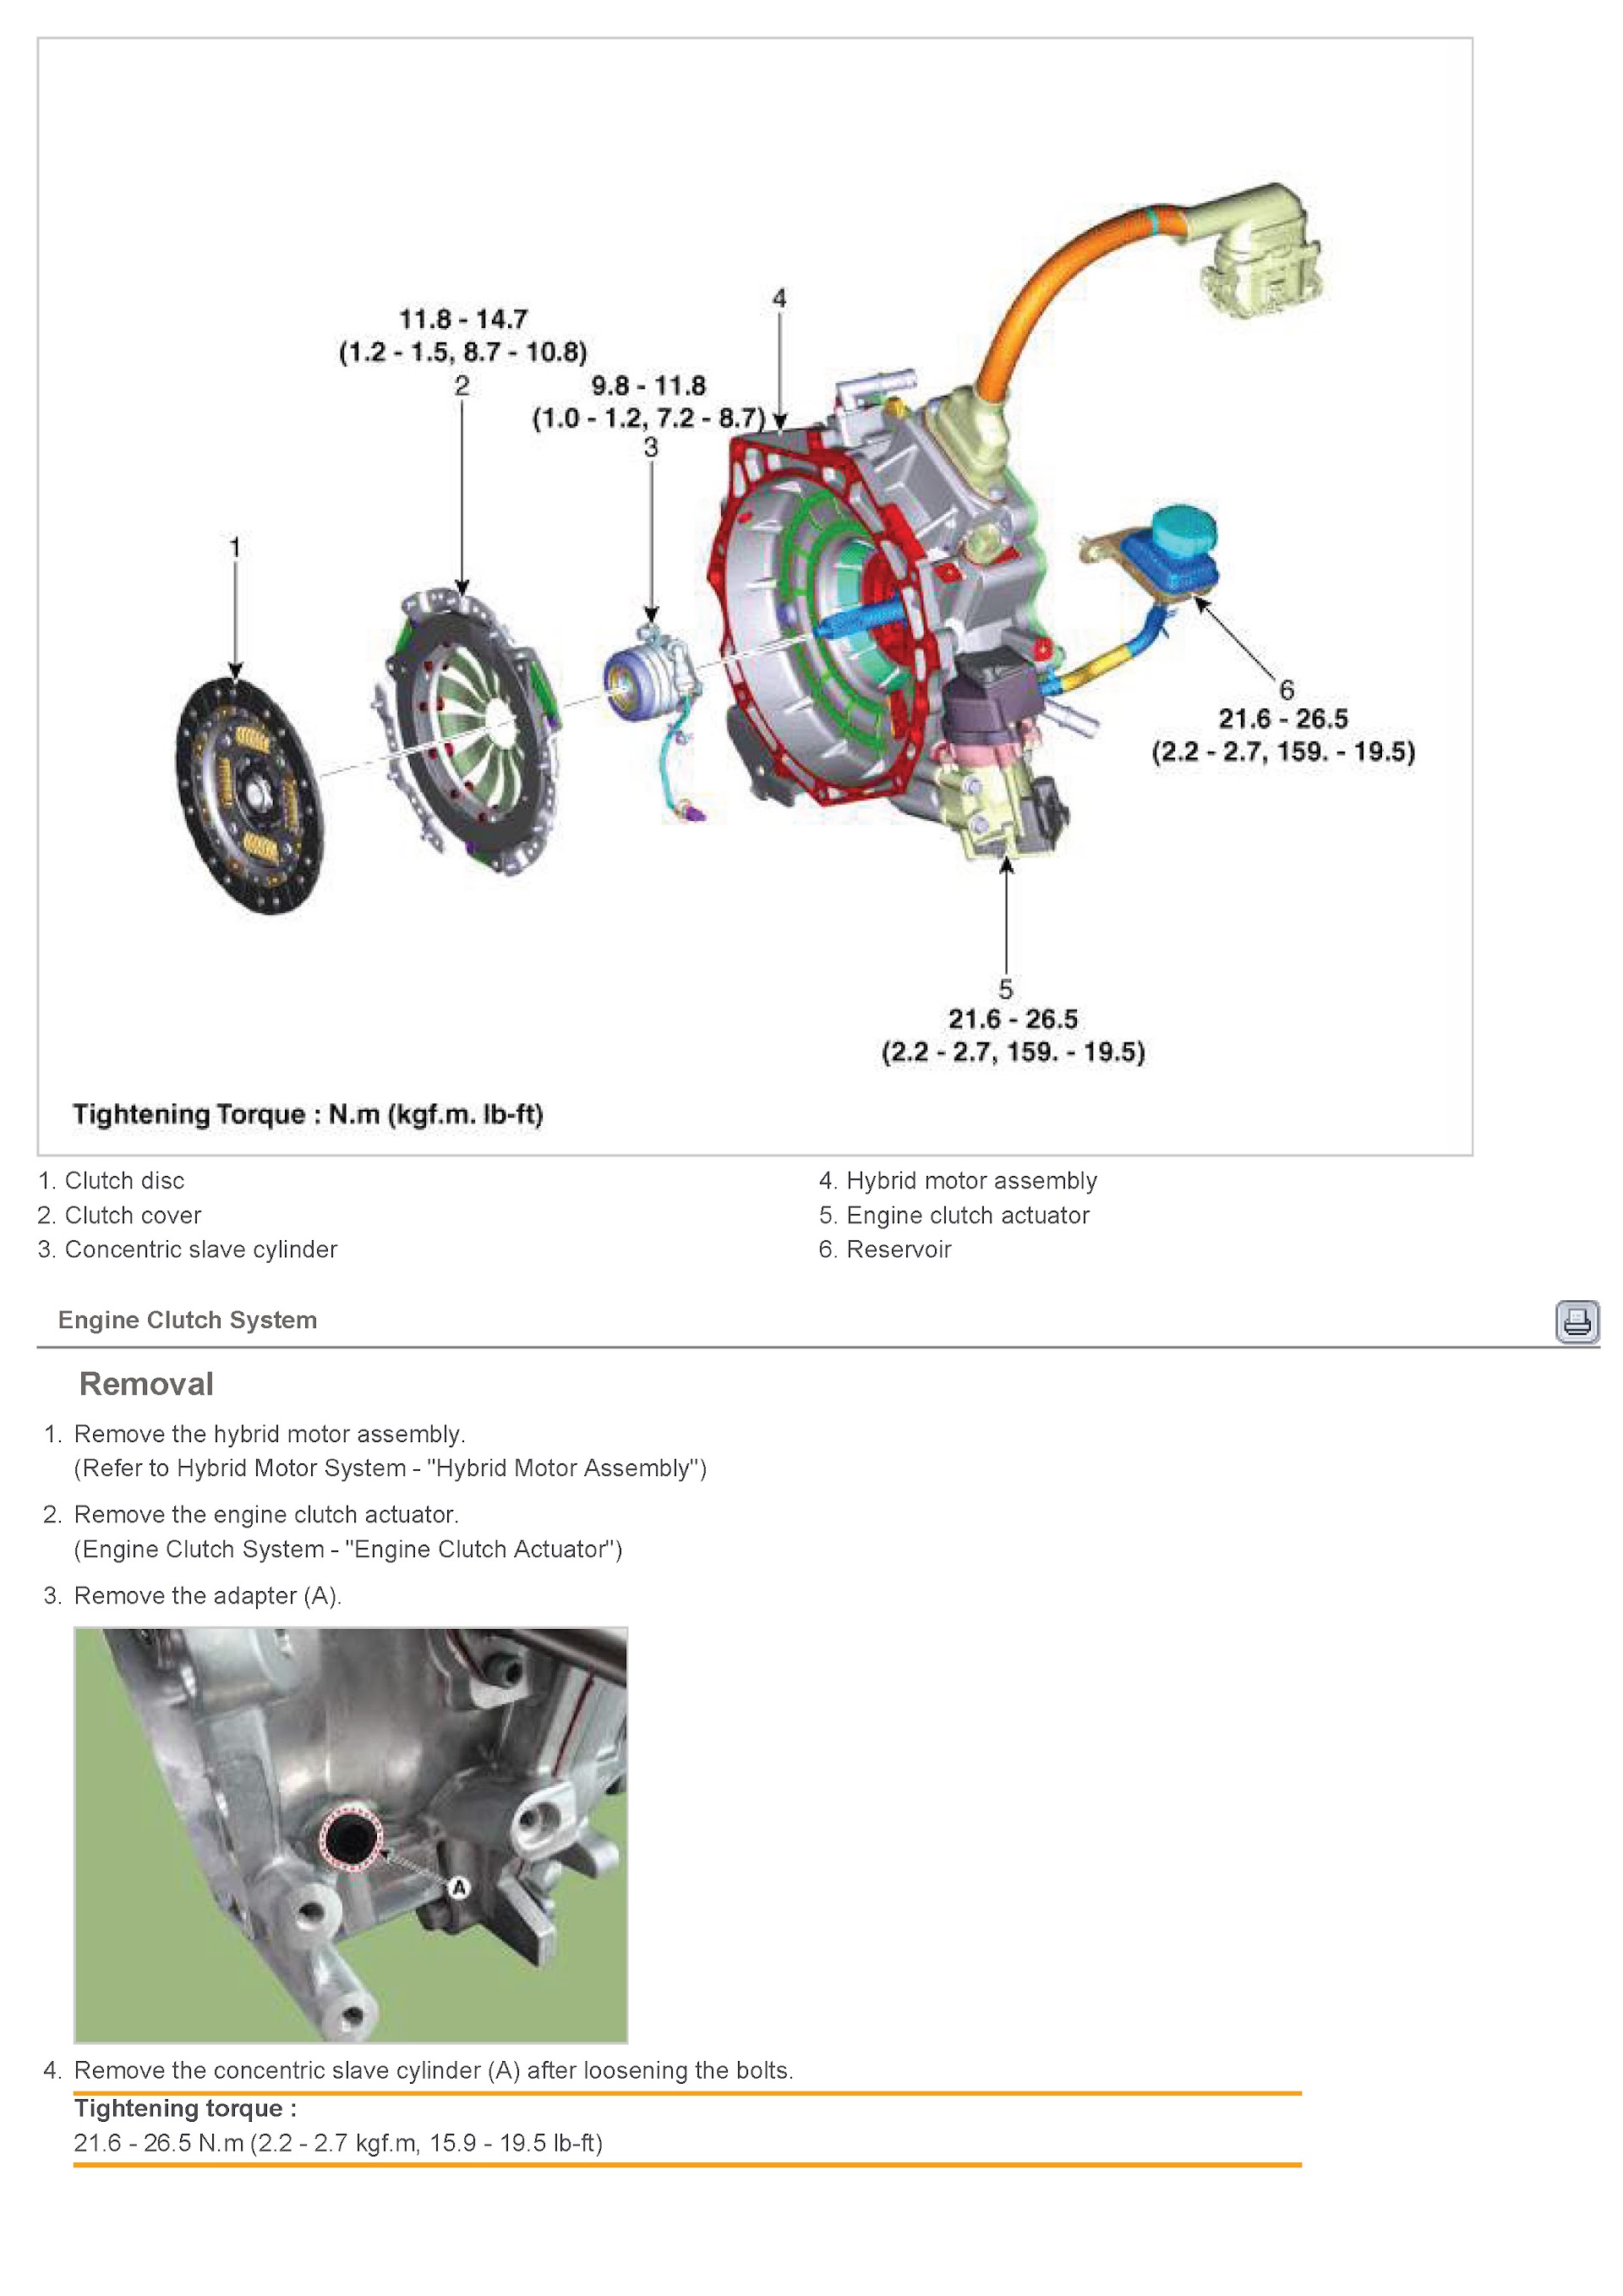 2017 Hyundai Ioniq Repair Manual, Tightening Torque